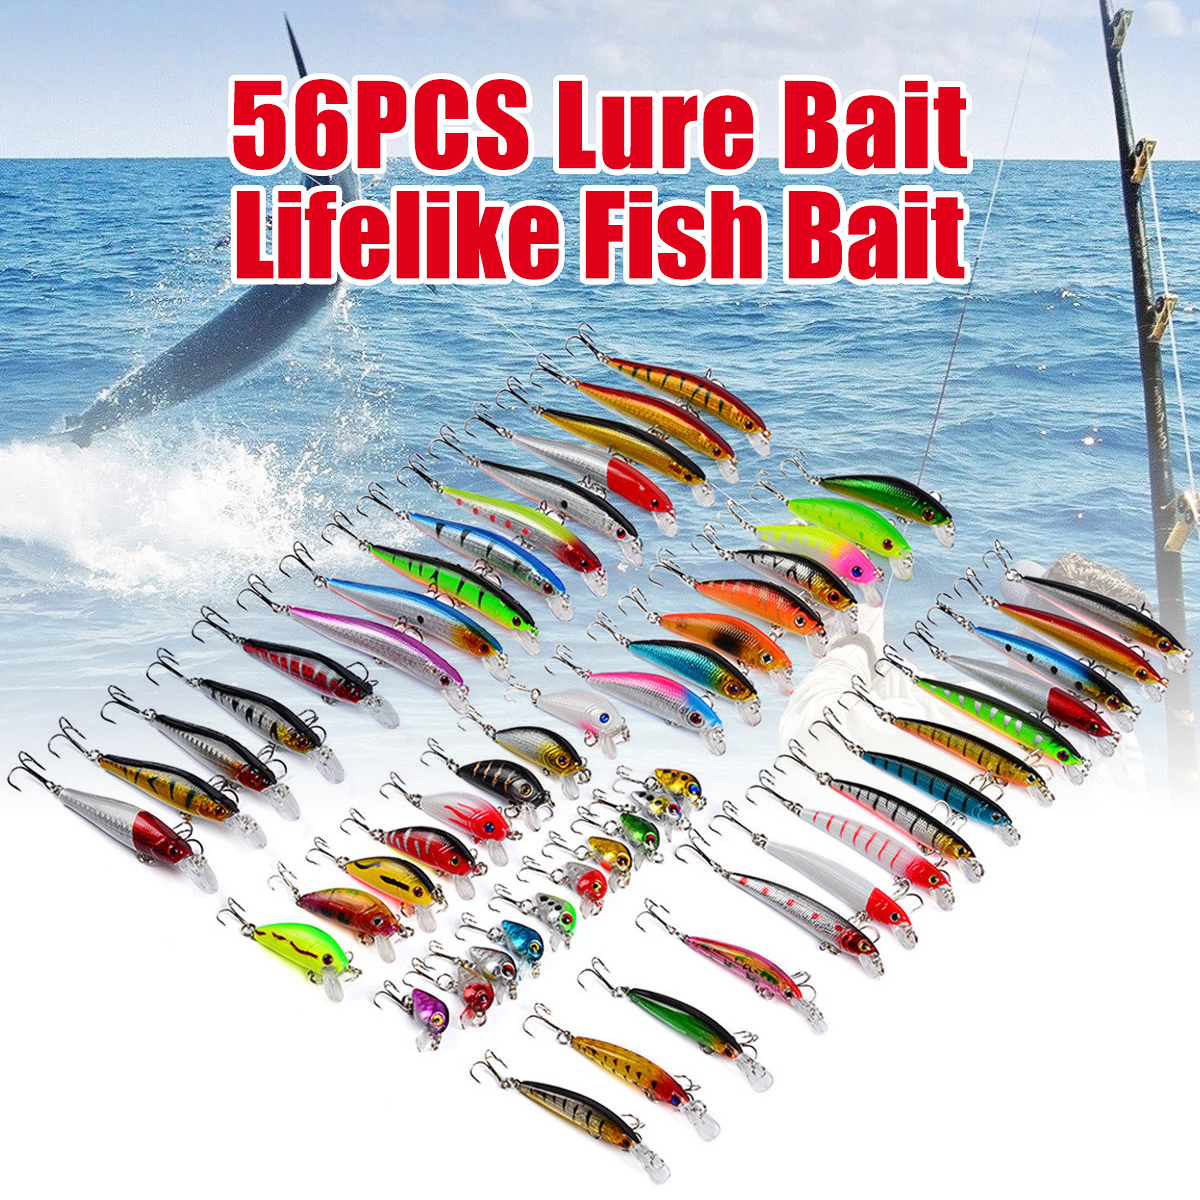 56 PC LURE BAIT LIFELIKE FISH BAIT WALMART THEBOOKONGONEFISIHING